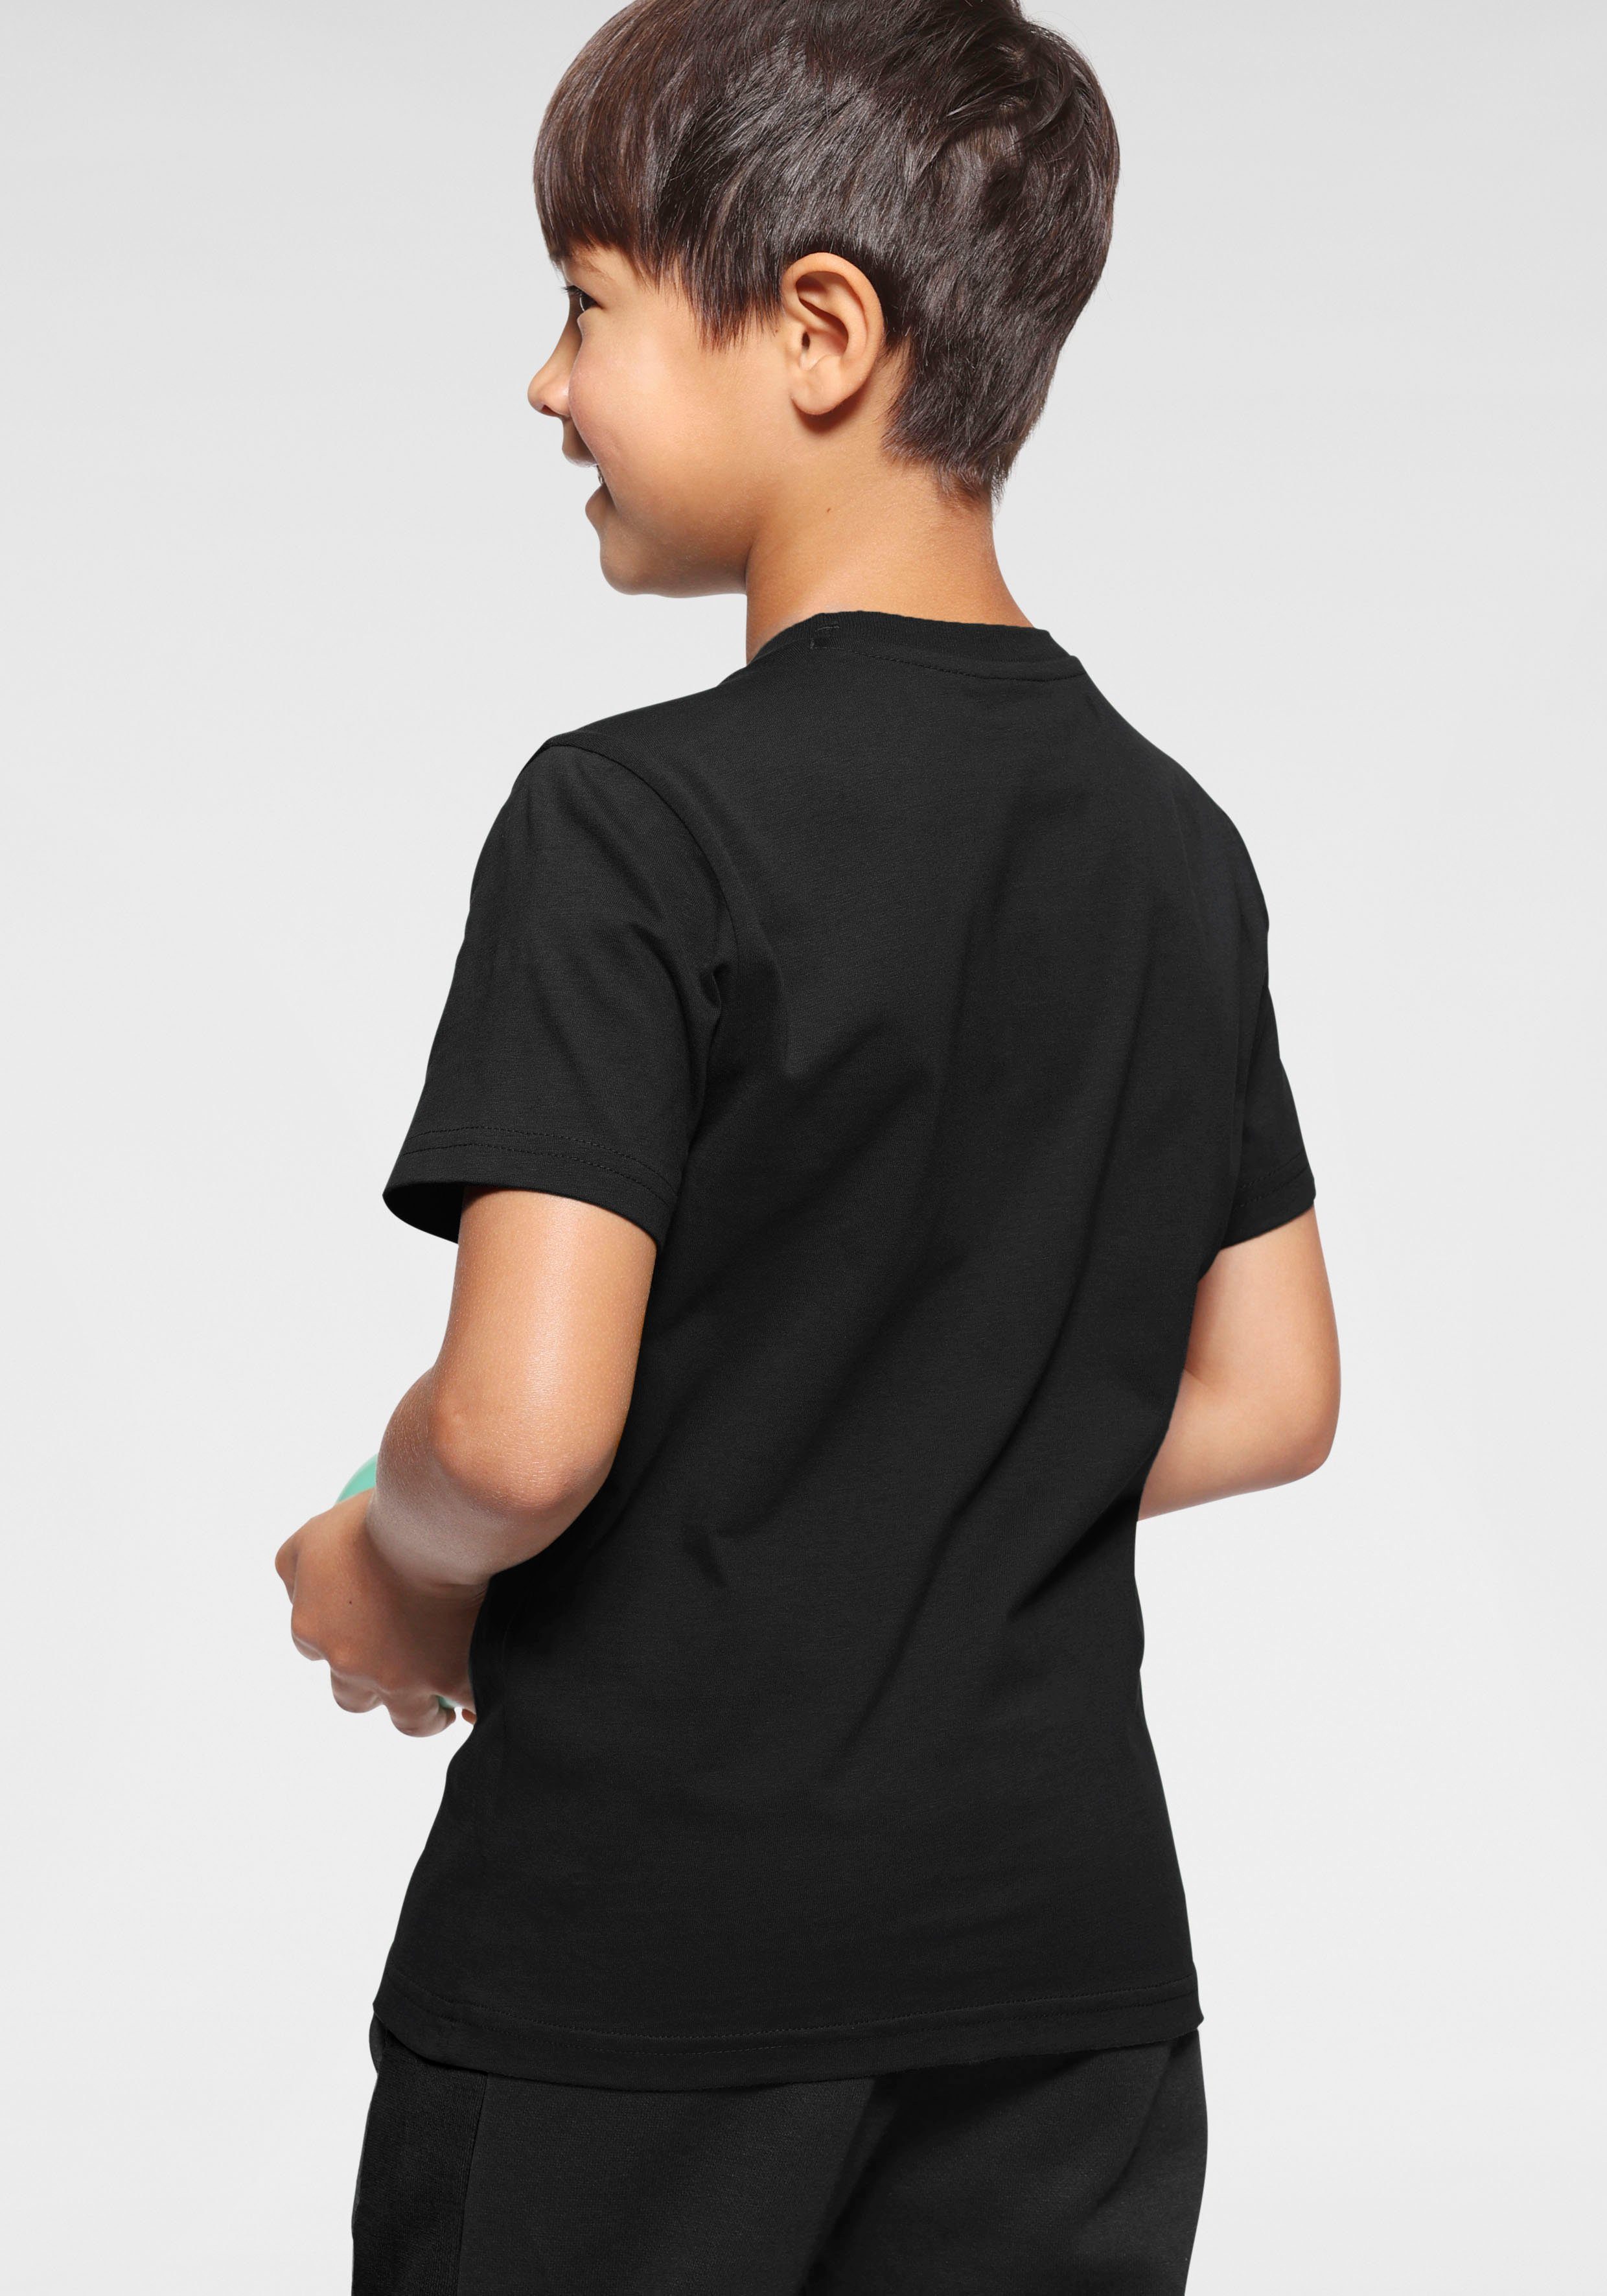 T-Shirt Crewneck für Kinder 2Pack - Champion T-Shirt schwarz-weiß